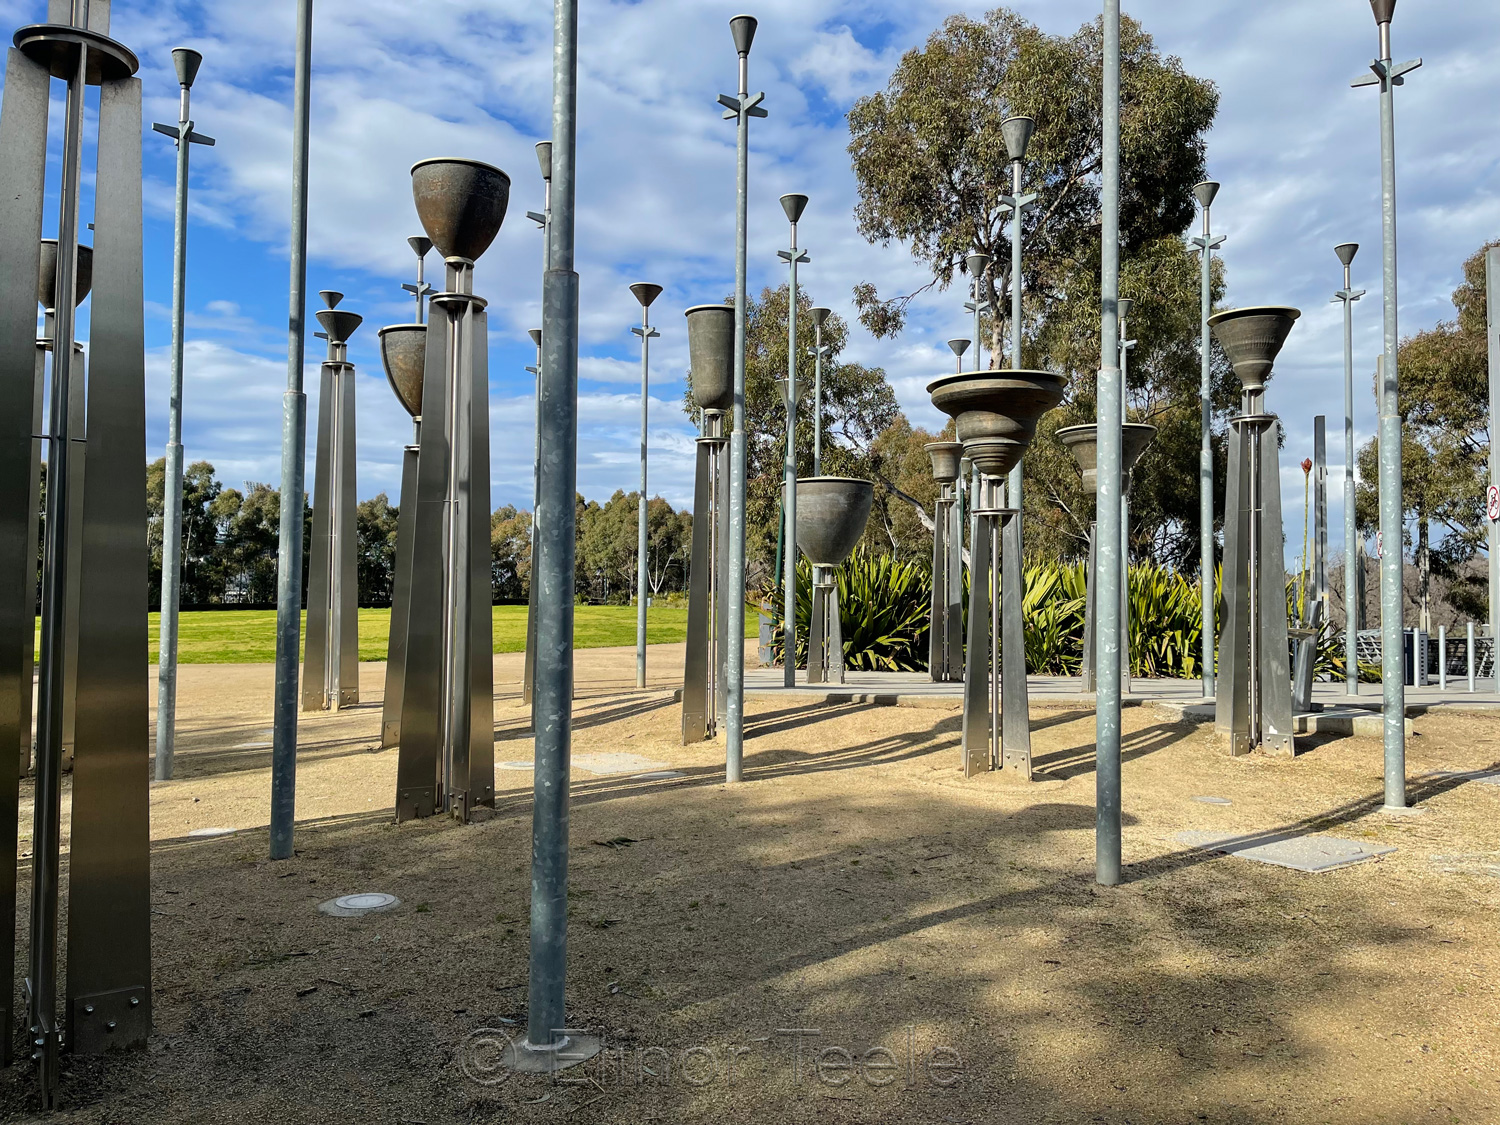 Federation Bells, Melbourne